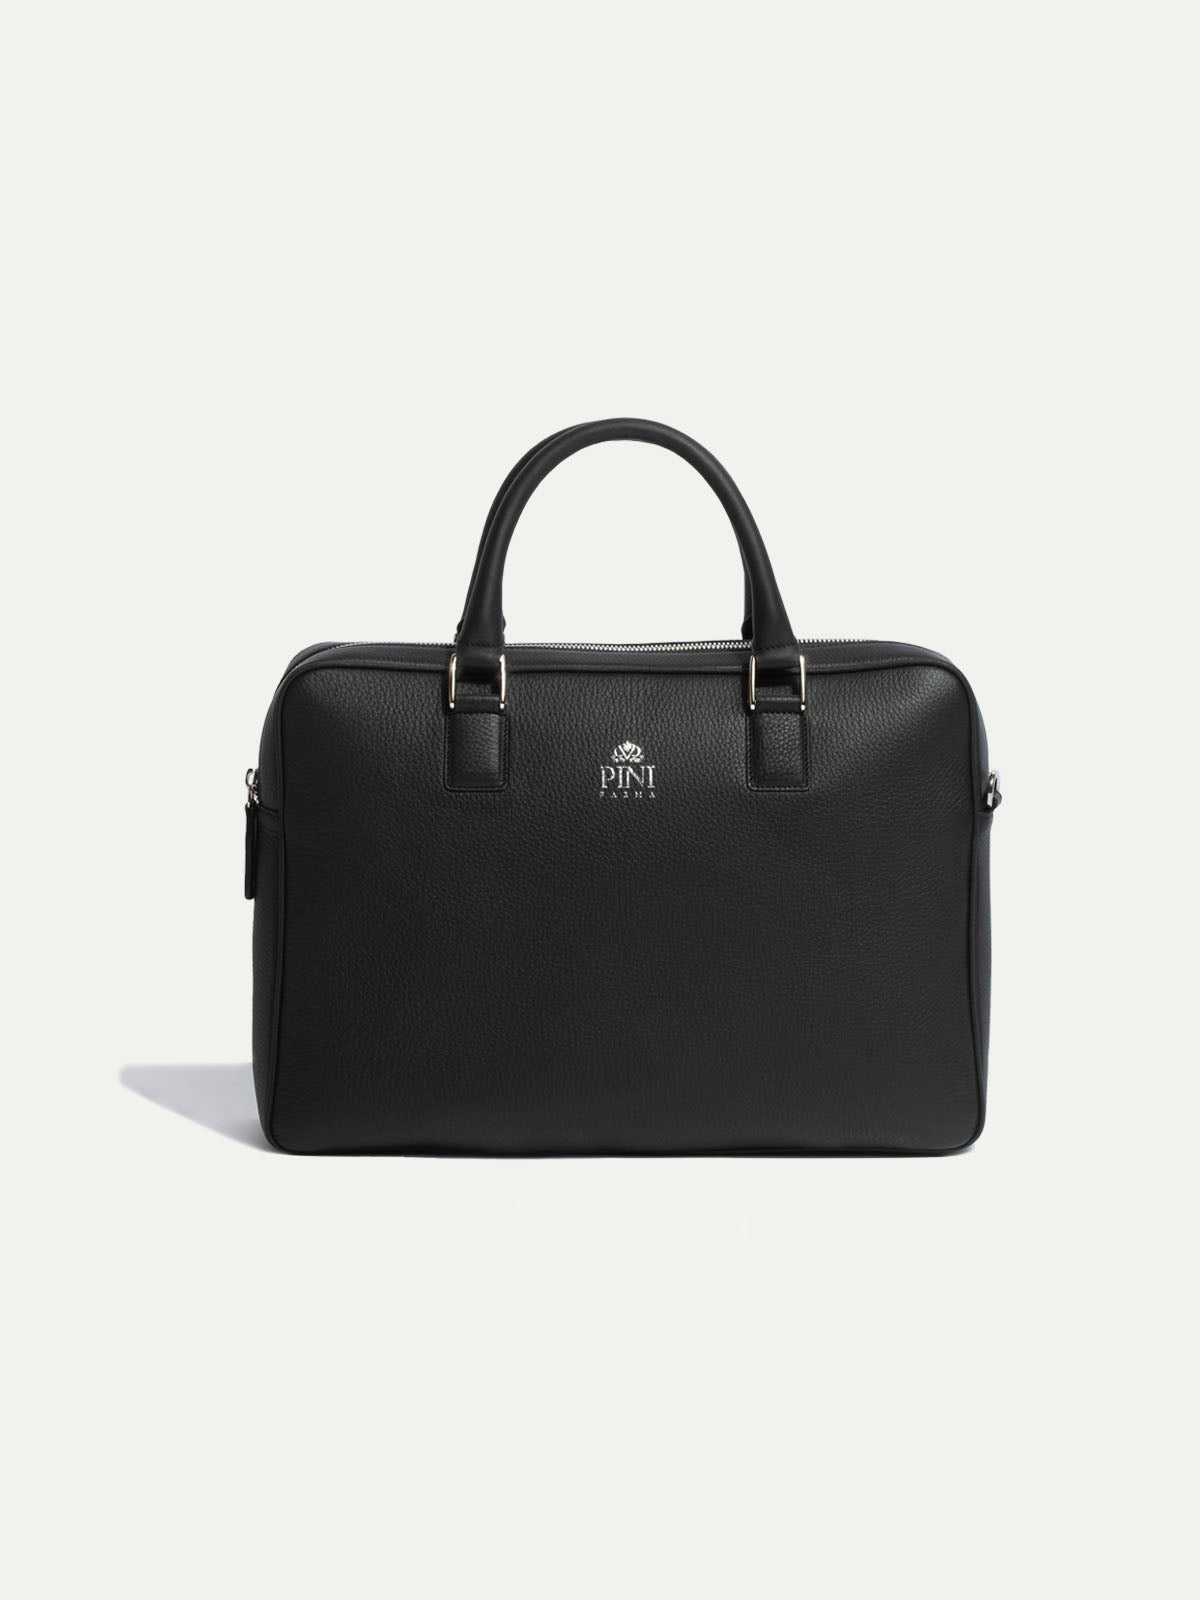 black leather briefcase, black formal briefcase, black briefcase